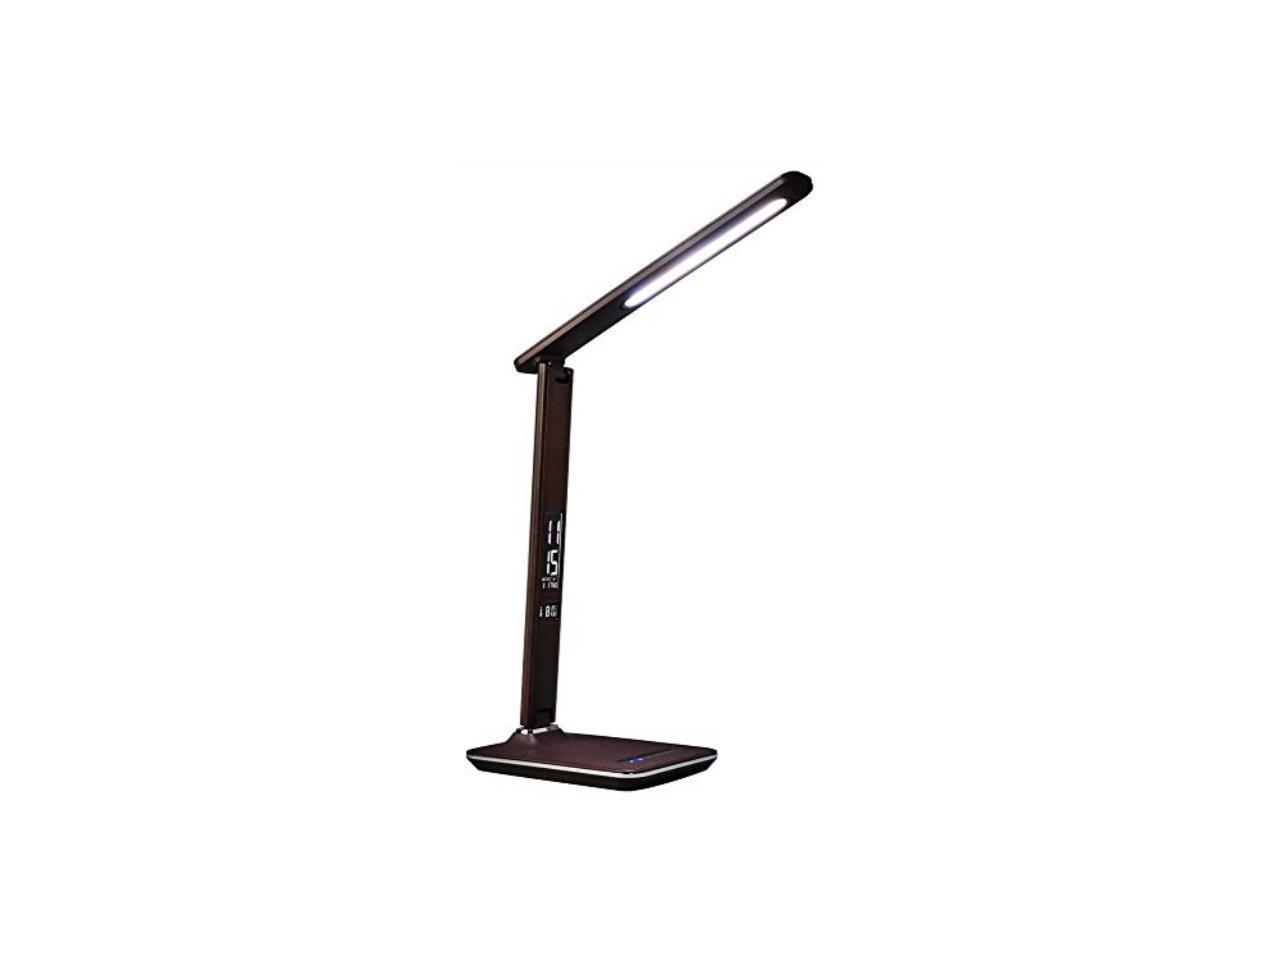 Ott-Lite Renew LED Desk Lamp- Brown